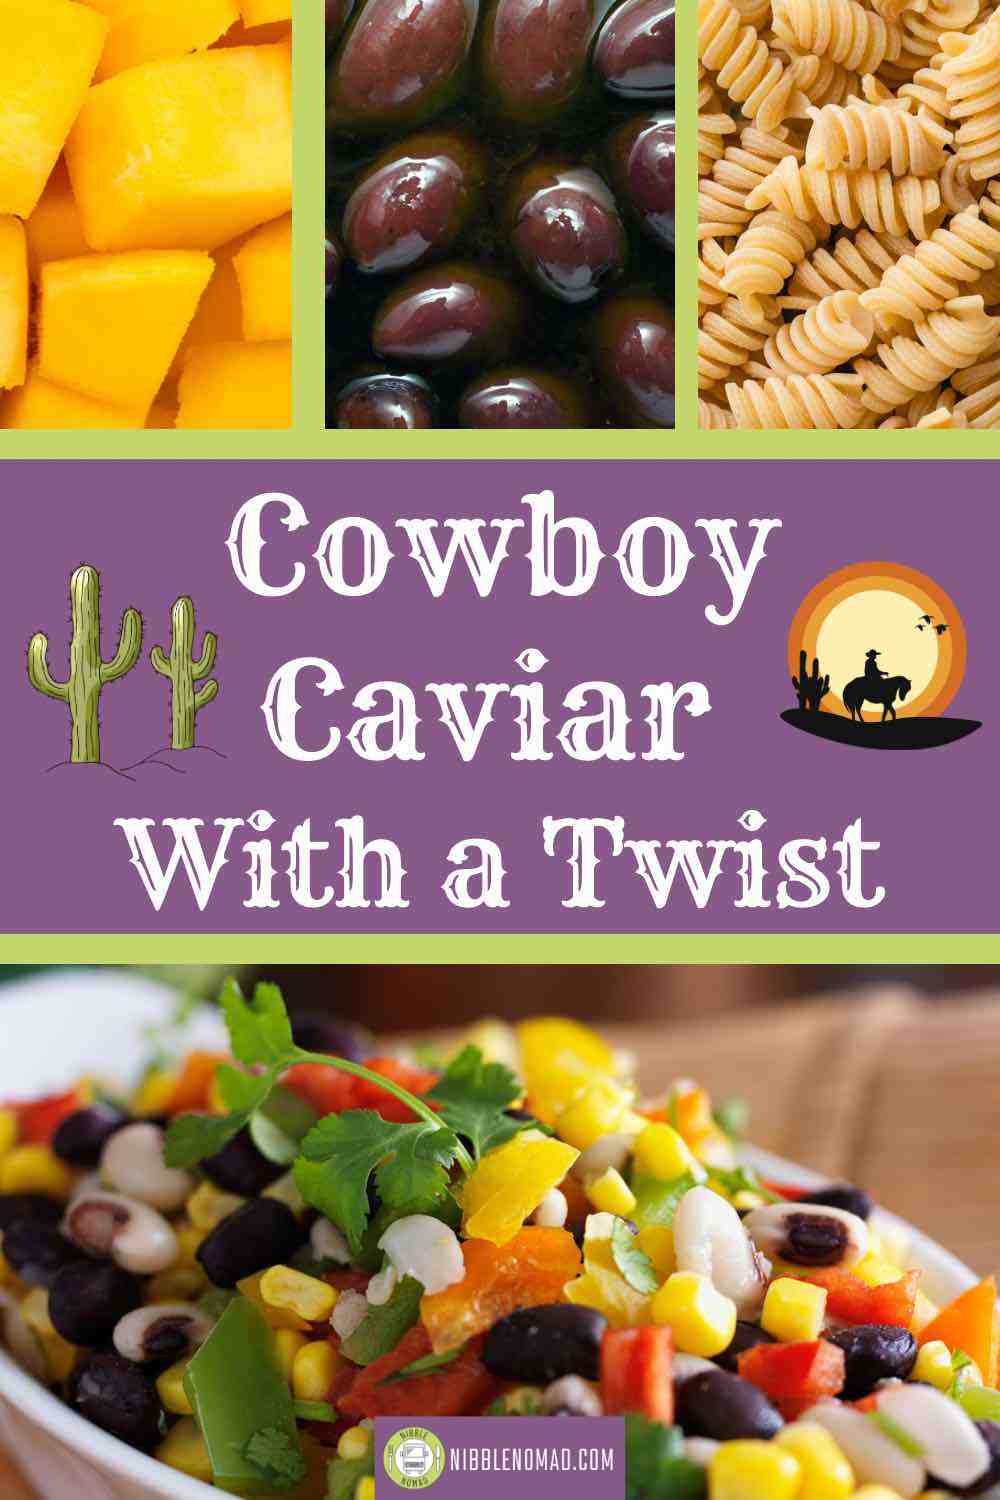 Cowboy Caviar With a Twist card